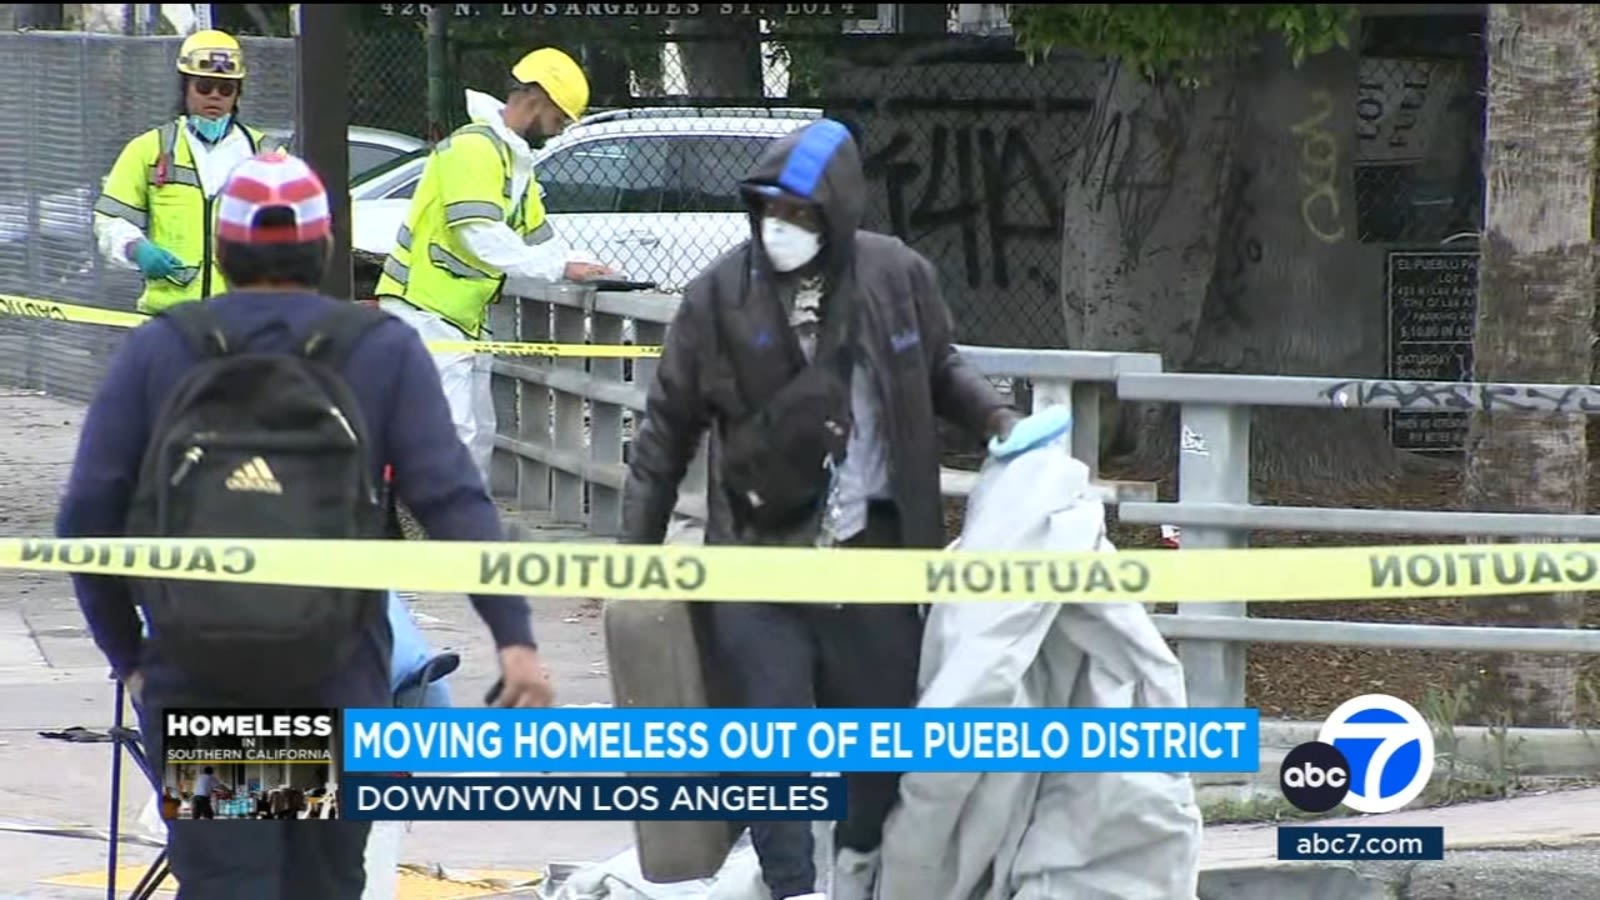 City crews work to remove homeless encampment around El Pueblo in downtown LA